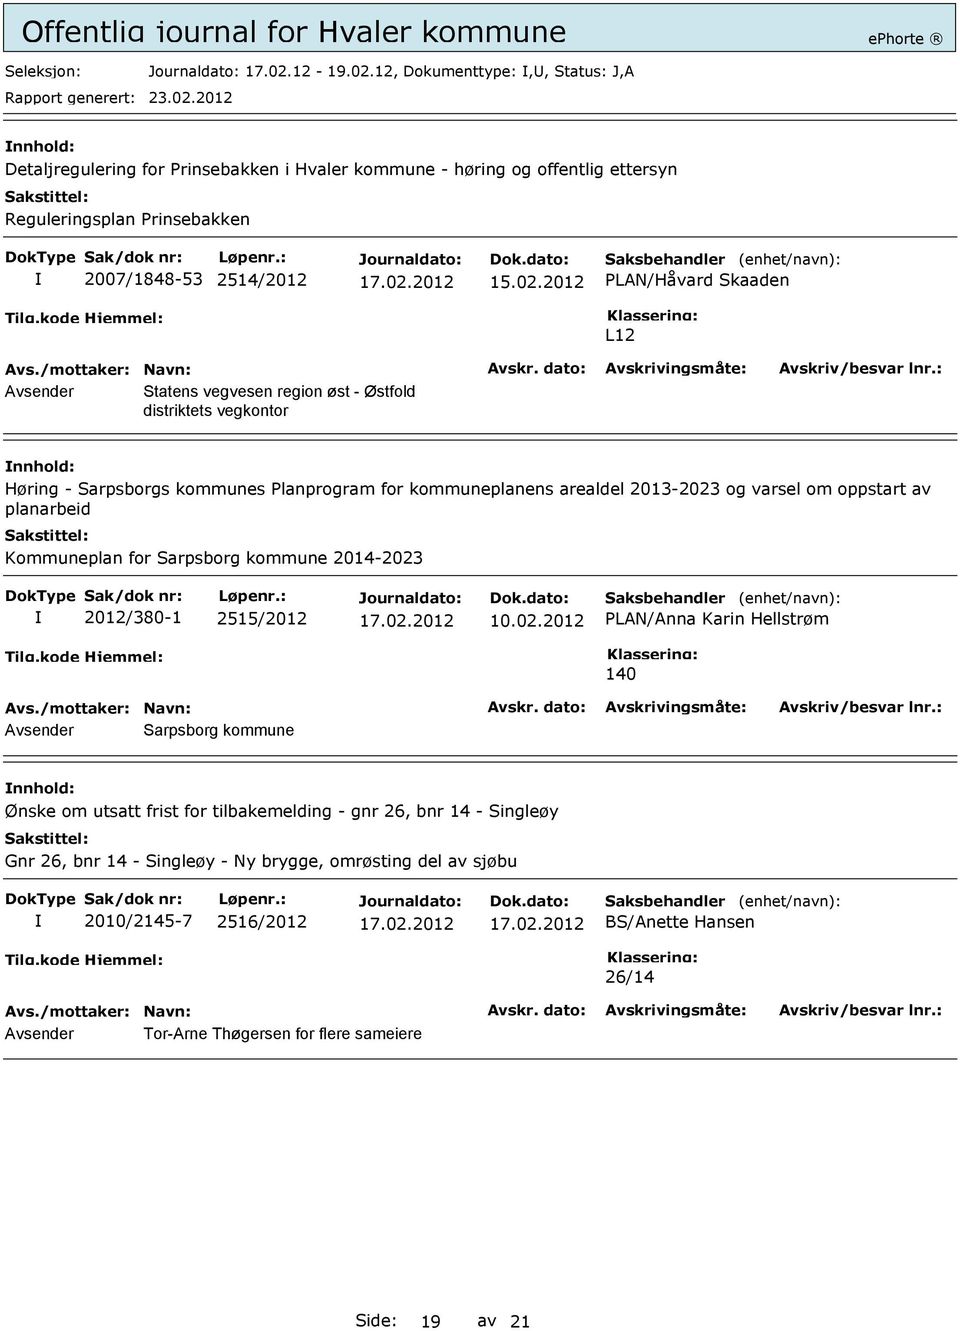 12, Dokumenttype:,, Status: J,A Detaljregulering for Prinsebakken i Hvaler kommune - høring og offentlig ettersyn Reguleringsplan Prinsebakken 2007/1848-53 2514/2012 15.02.